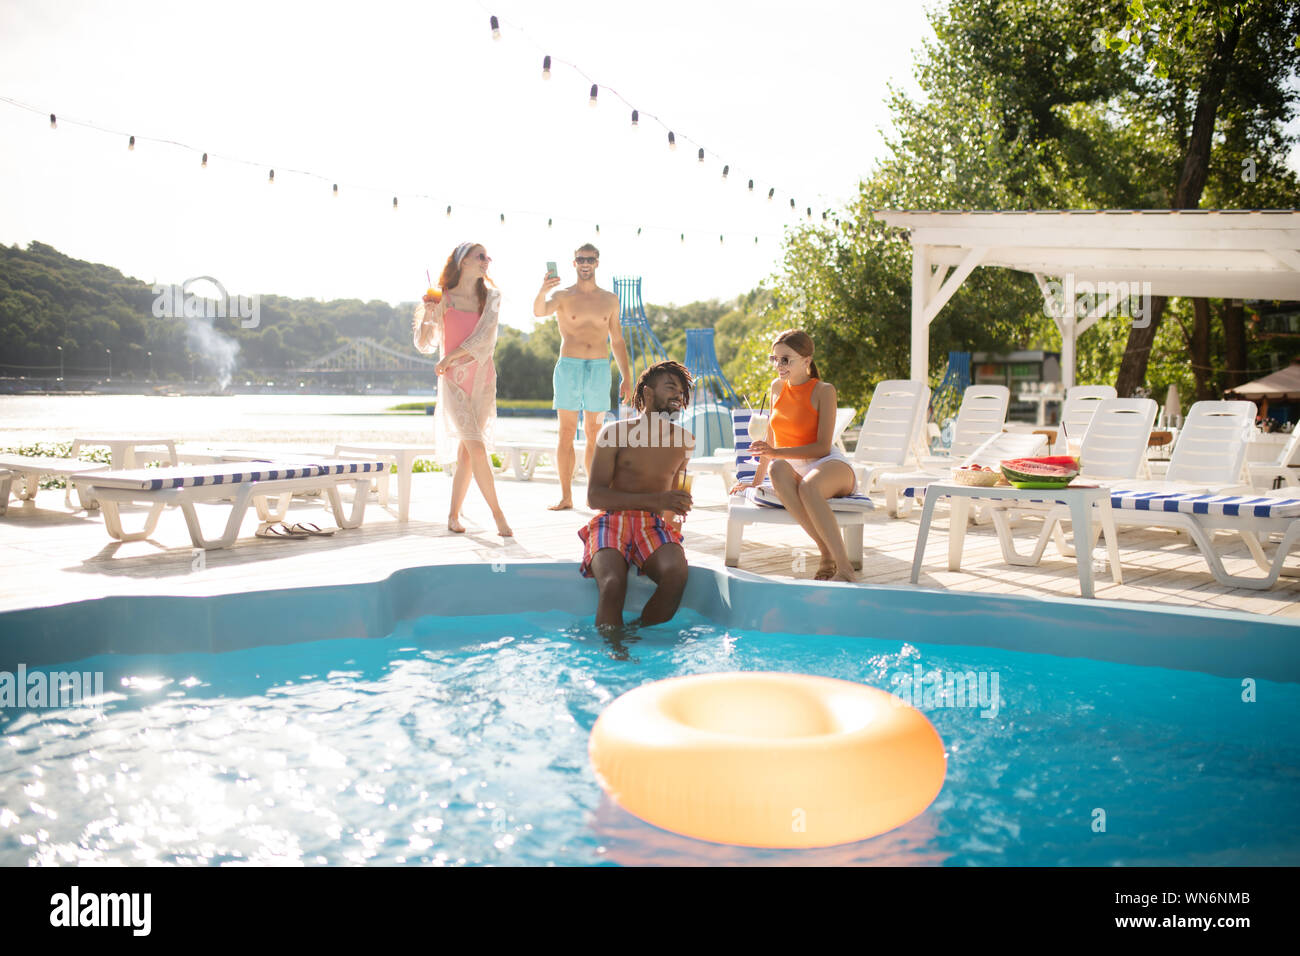 Deux couples ayant amazing pool party sur chaude journée d'été Banque D'Images